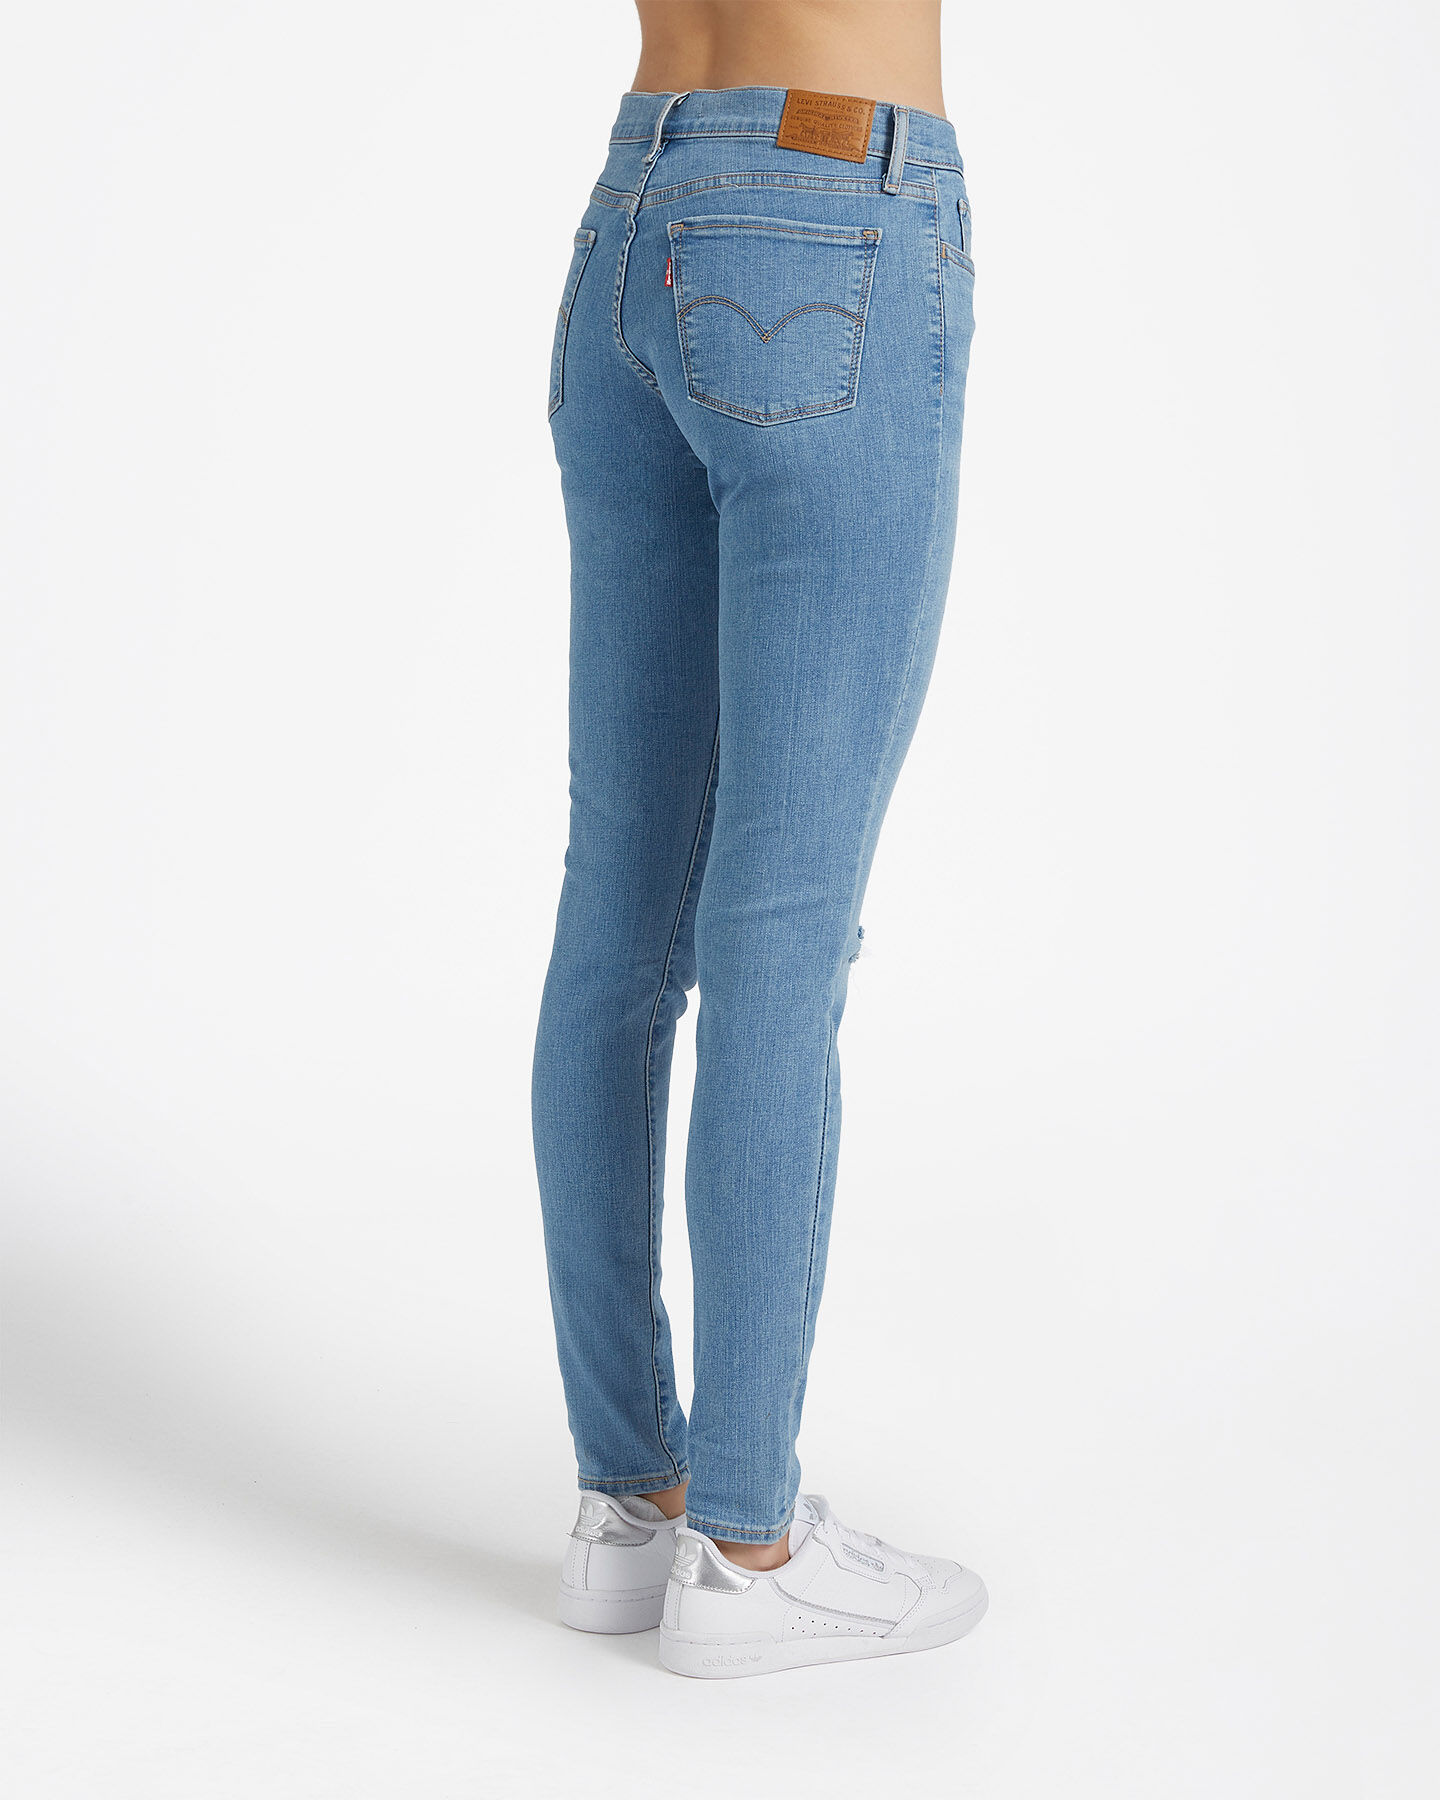  Jeans LEVI'S 710 SUPER SKINNY W S4077780|0364|26 scatto 1